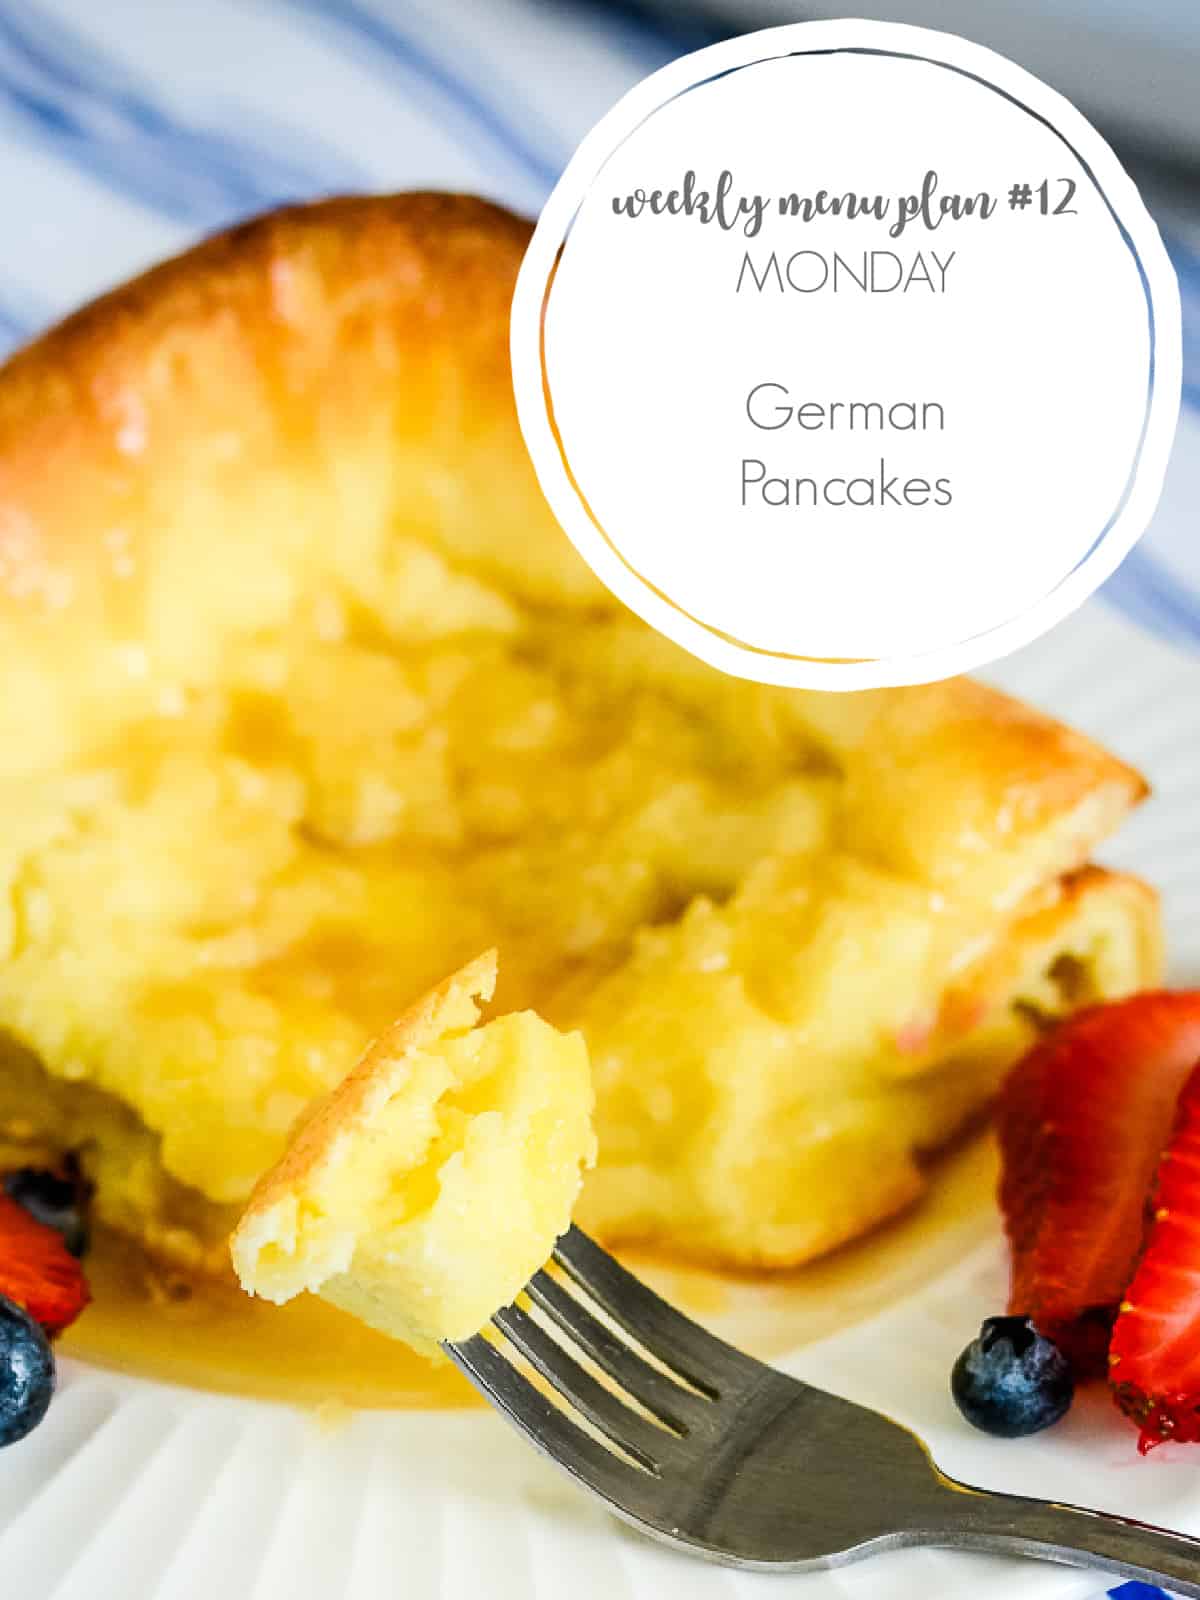 german pancakes for menu plan #12